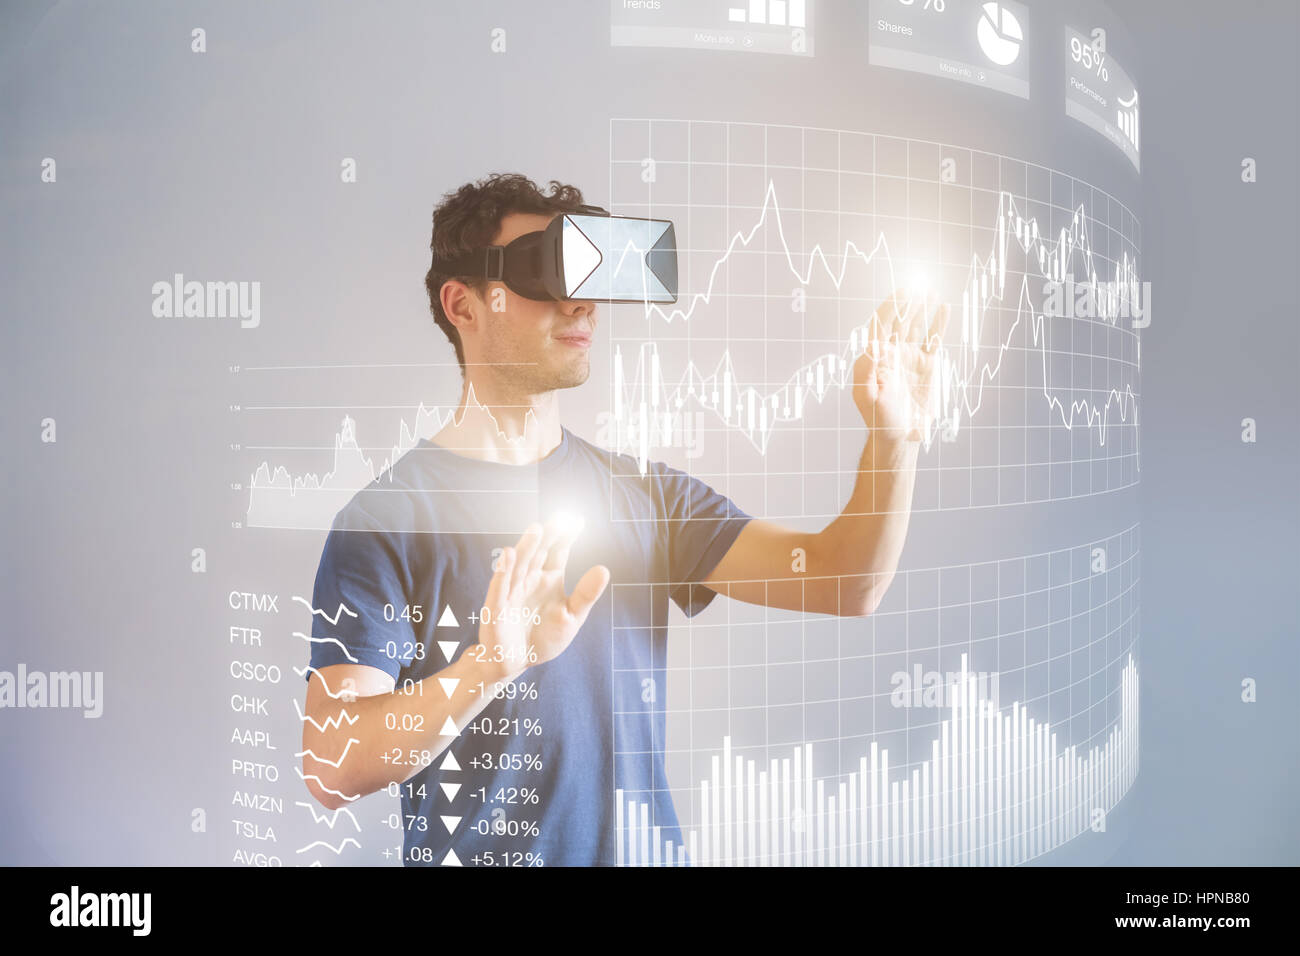 Trägers virtuelle Realität (VR) Kopfhörer oder Head mounted Display (HMD) Gläser zur Interaktion mit finanziellen Dashboard mit Börse zentrale Dienst- Stockfoto